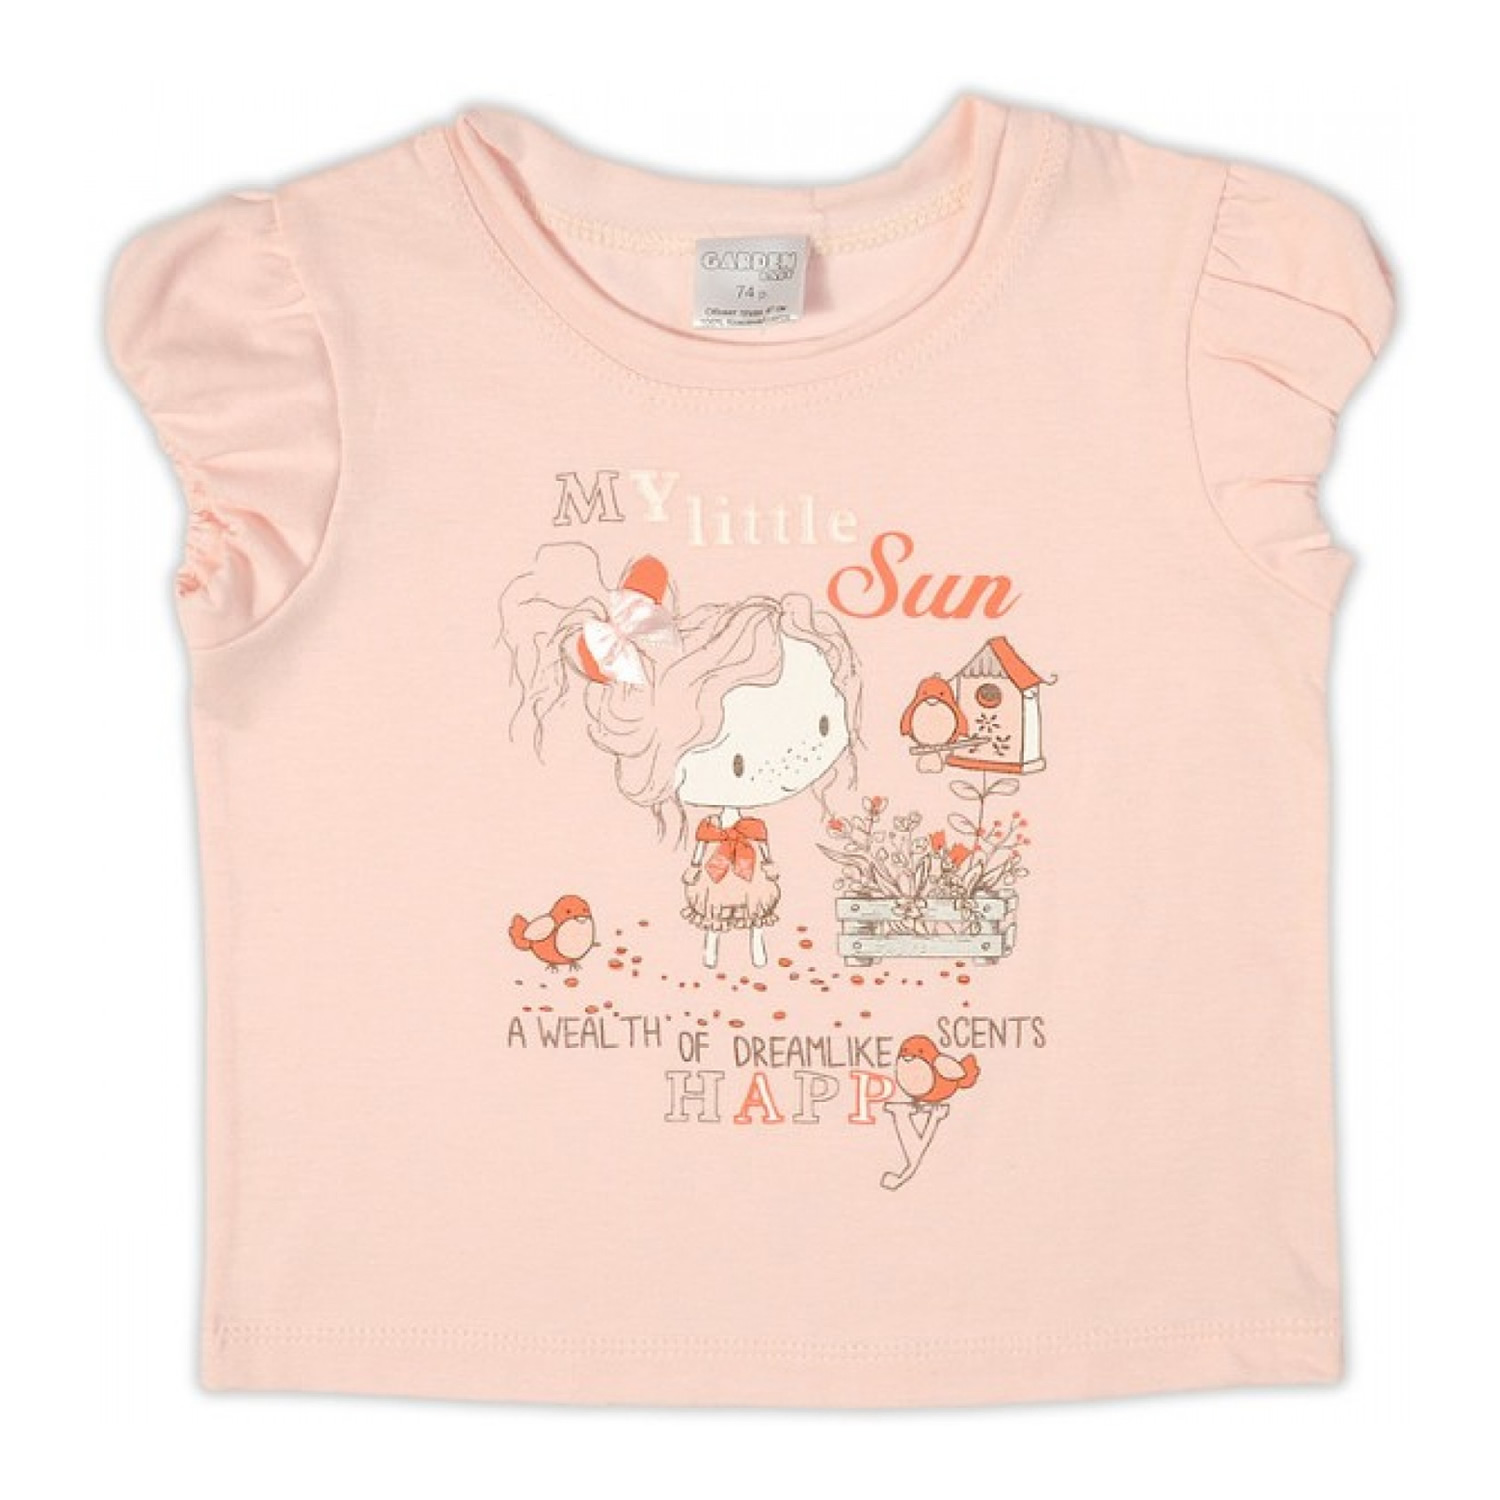 Дитяча футболка для дівчинки, персикова (26159-03), Garden Baby (Гарден Бебі)